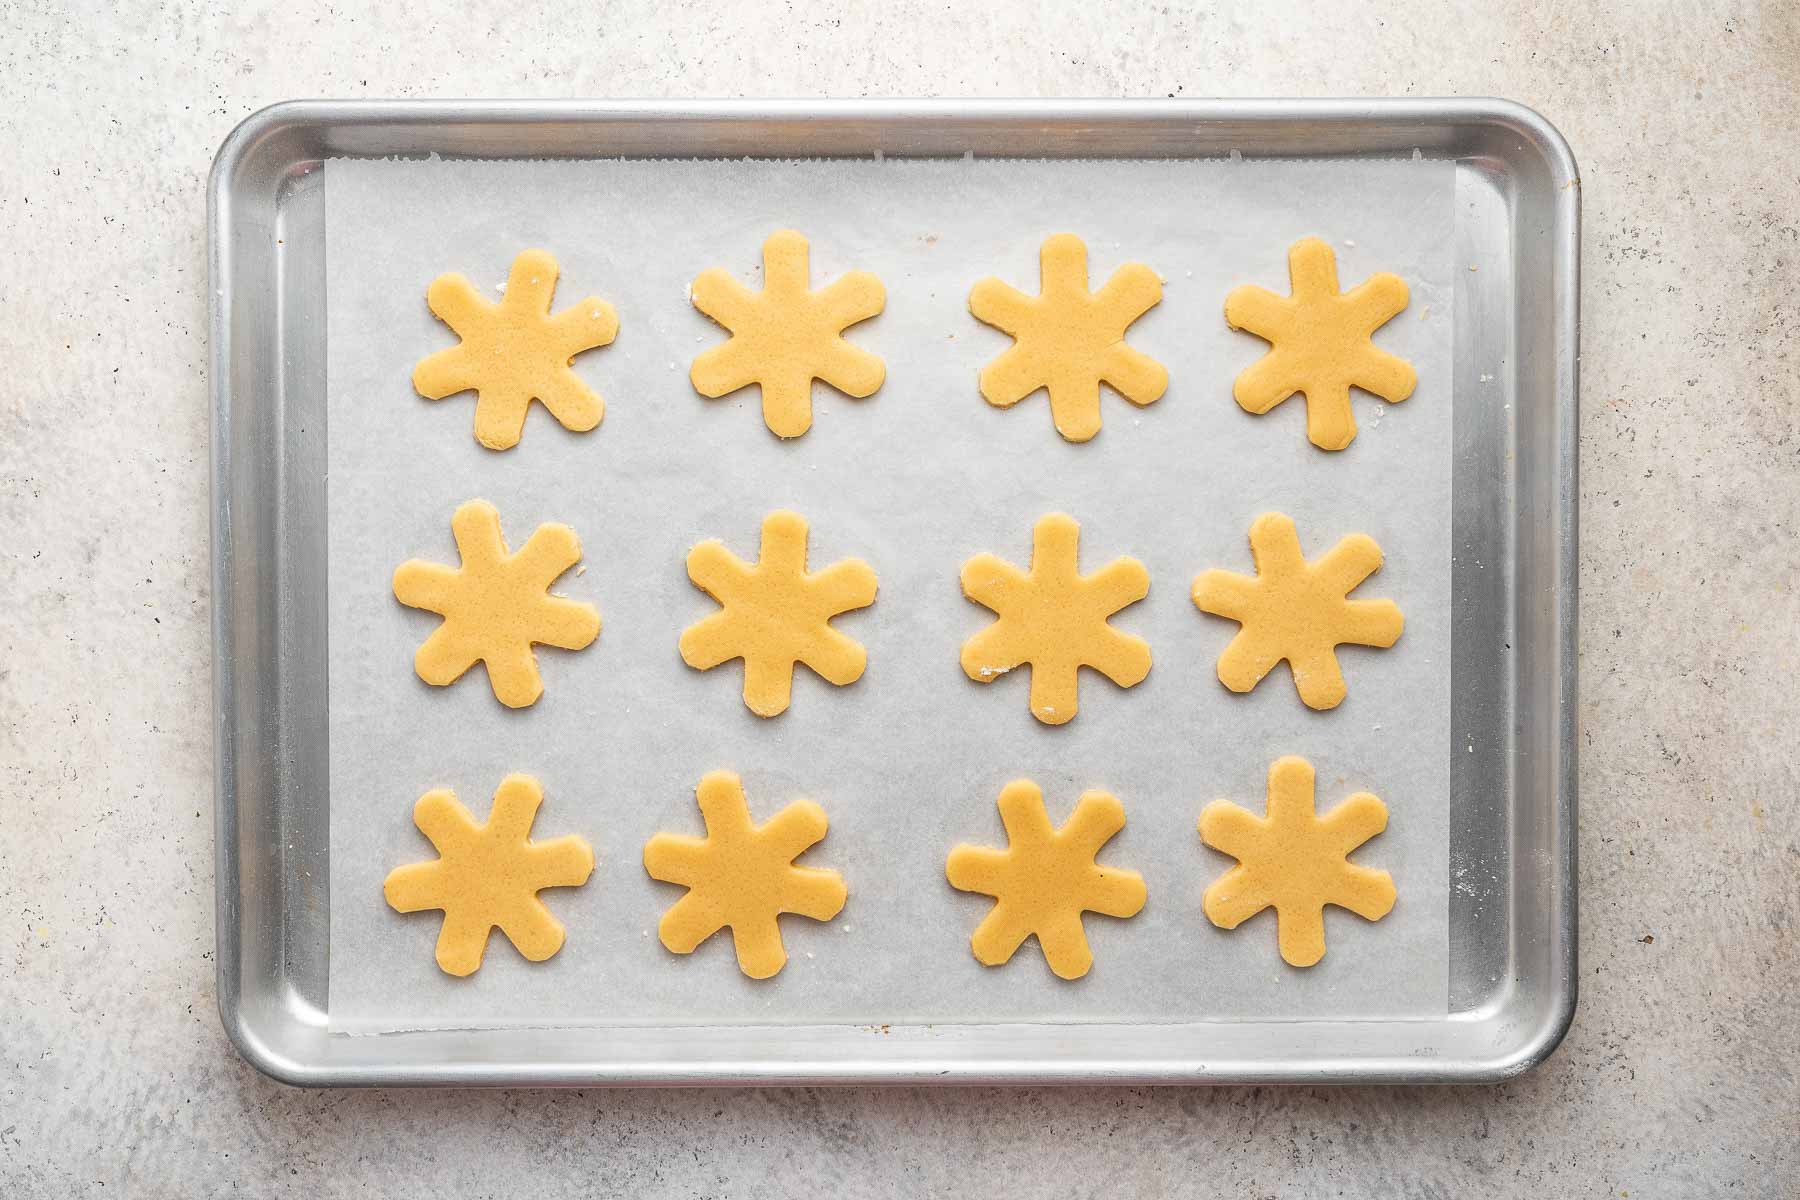 Twelve snowflake cookies on a baking sheet before being baked.